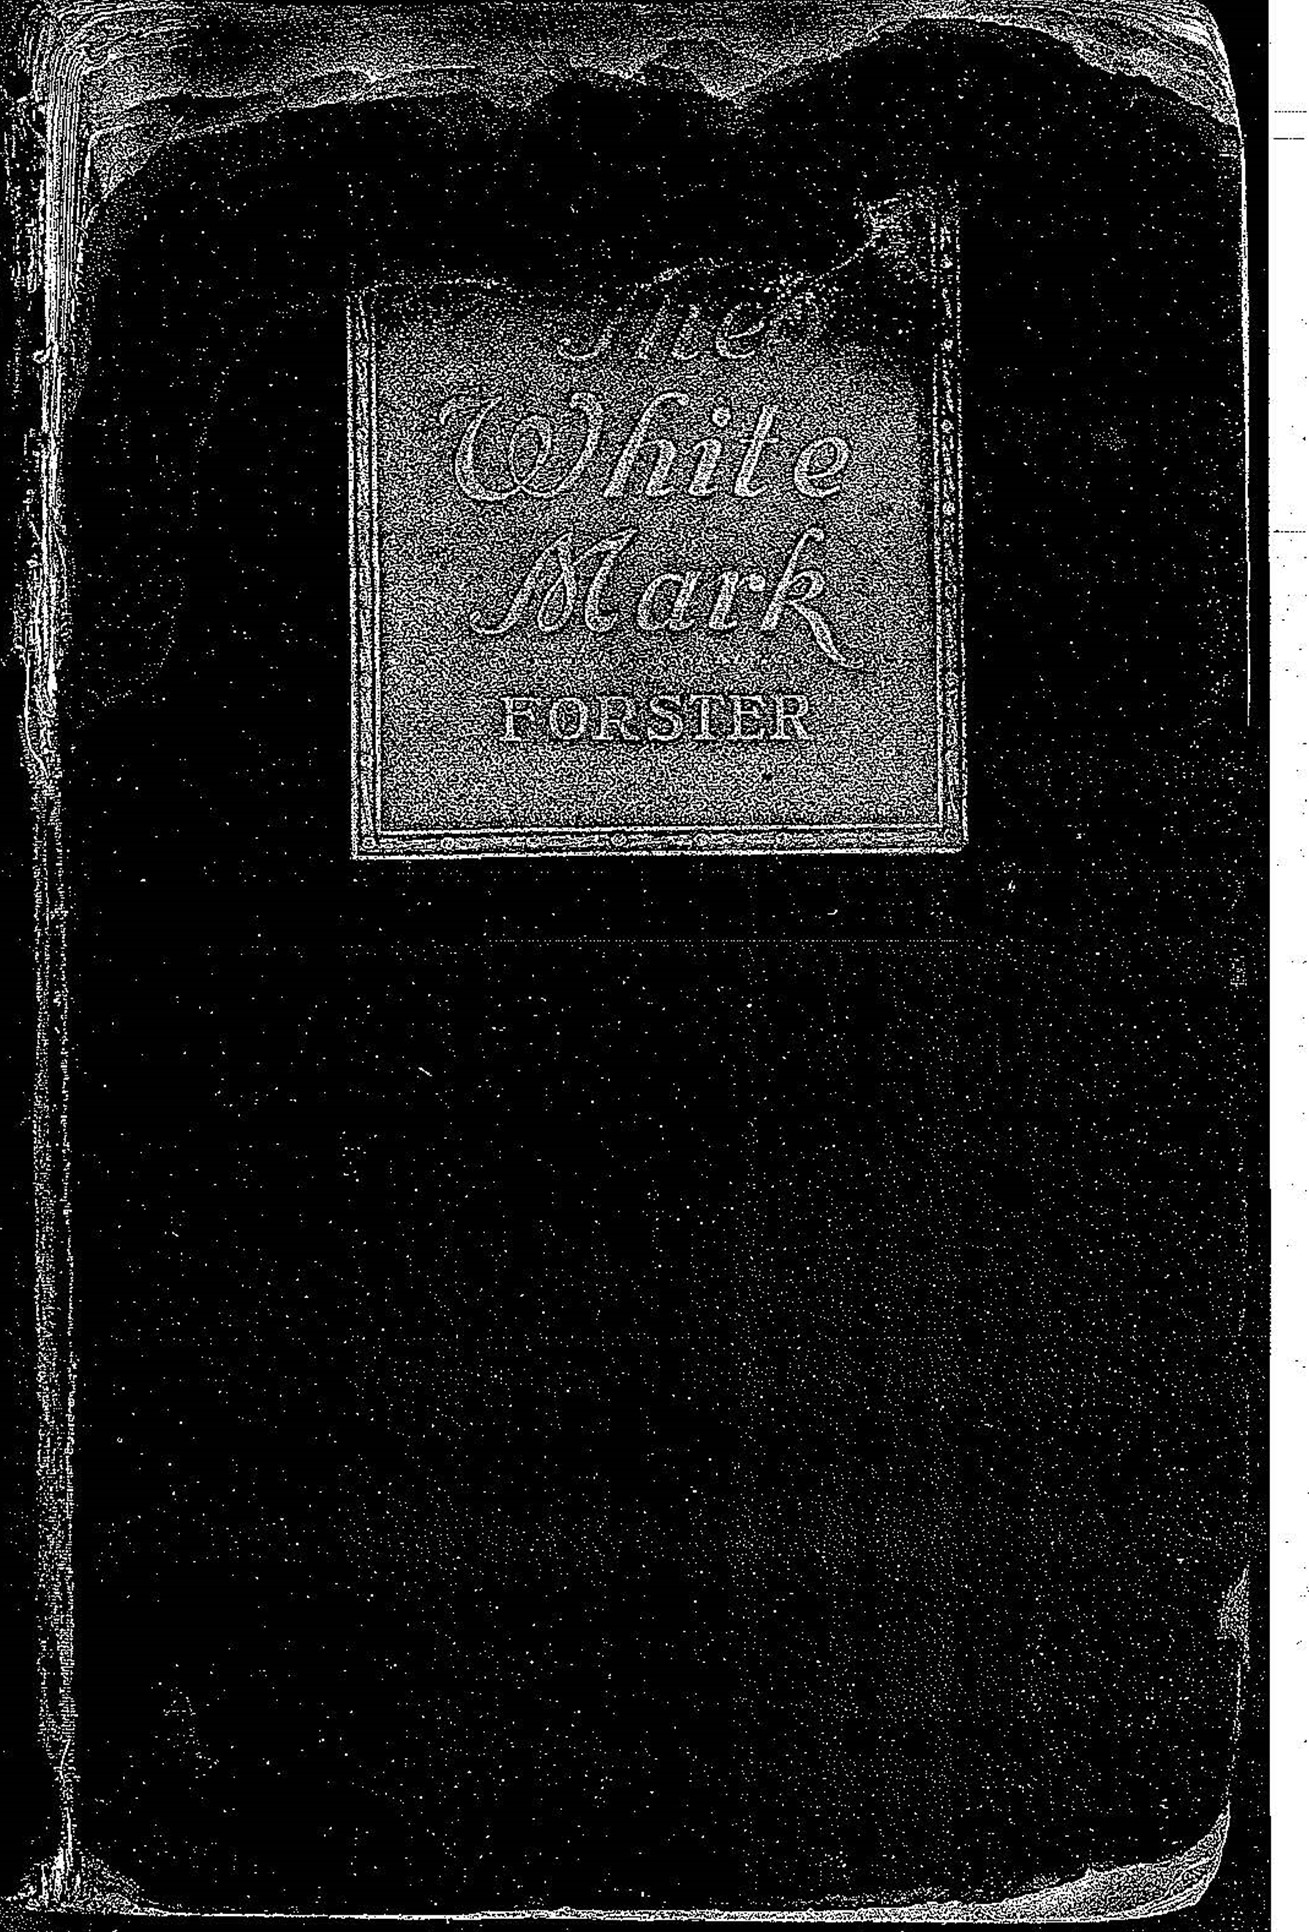 The White Mark – Forster (1921)